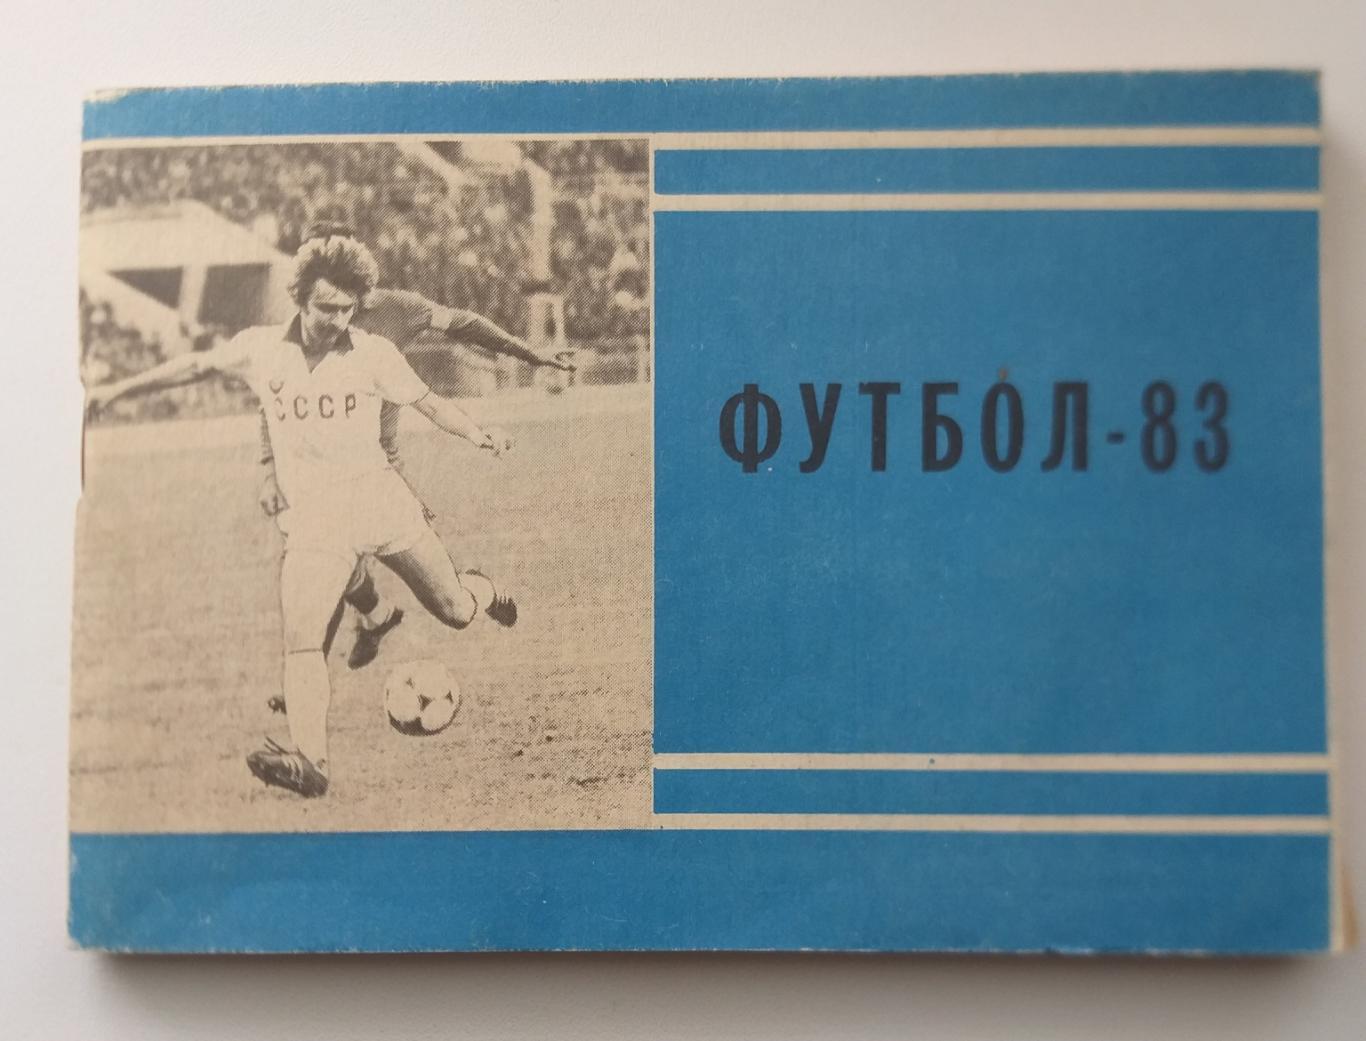 Справочник календарь футбол (второй круг) Москва Московская правда 1983